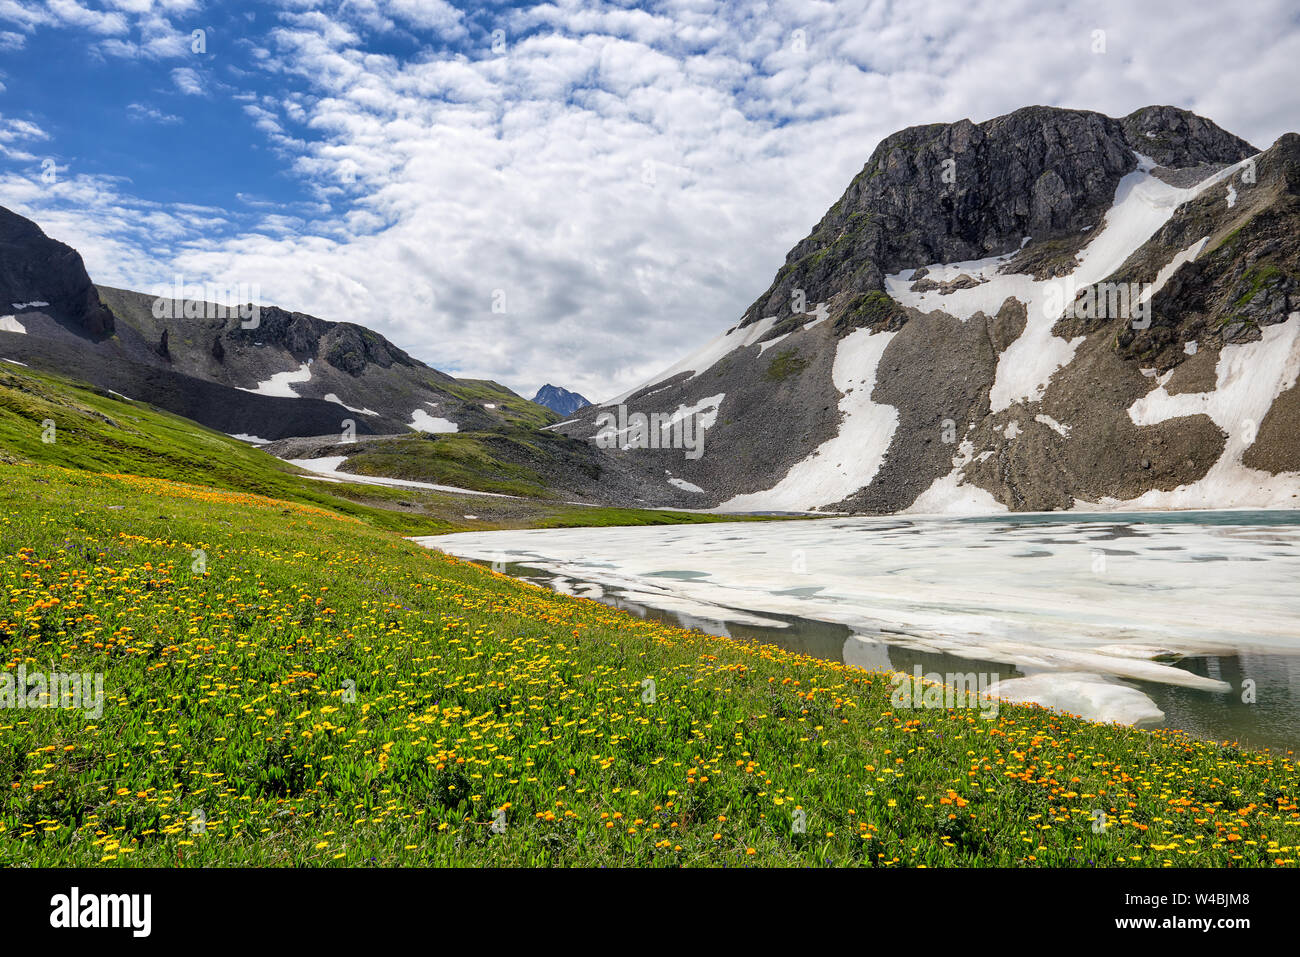 Blooming prairie alpine à côté de la glace du lac de montagne. Juillet. La République de Tyva. L'Asie centrale Banque D'Images